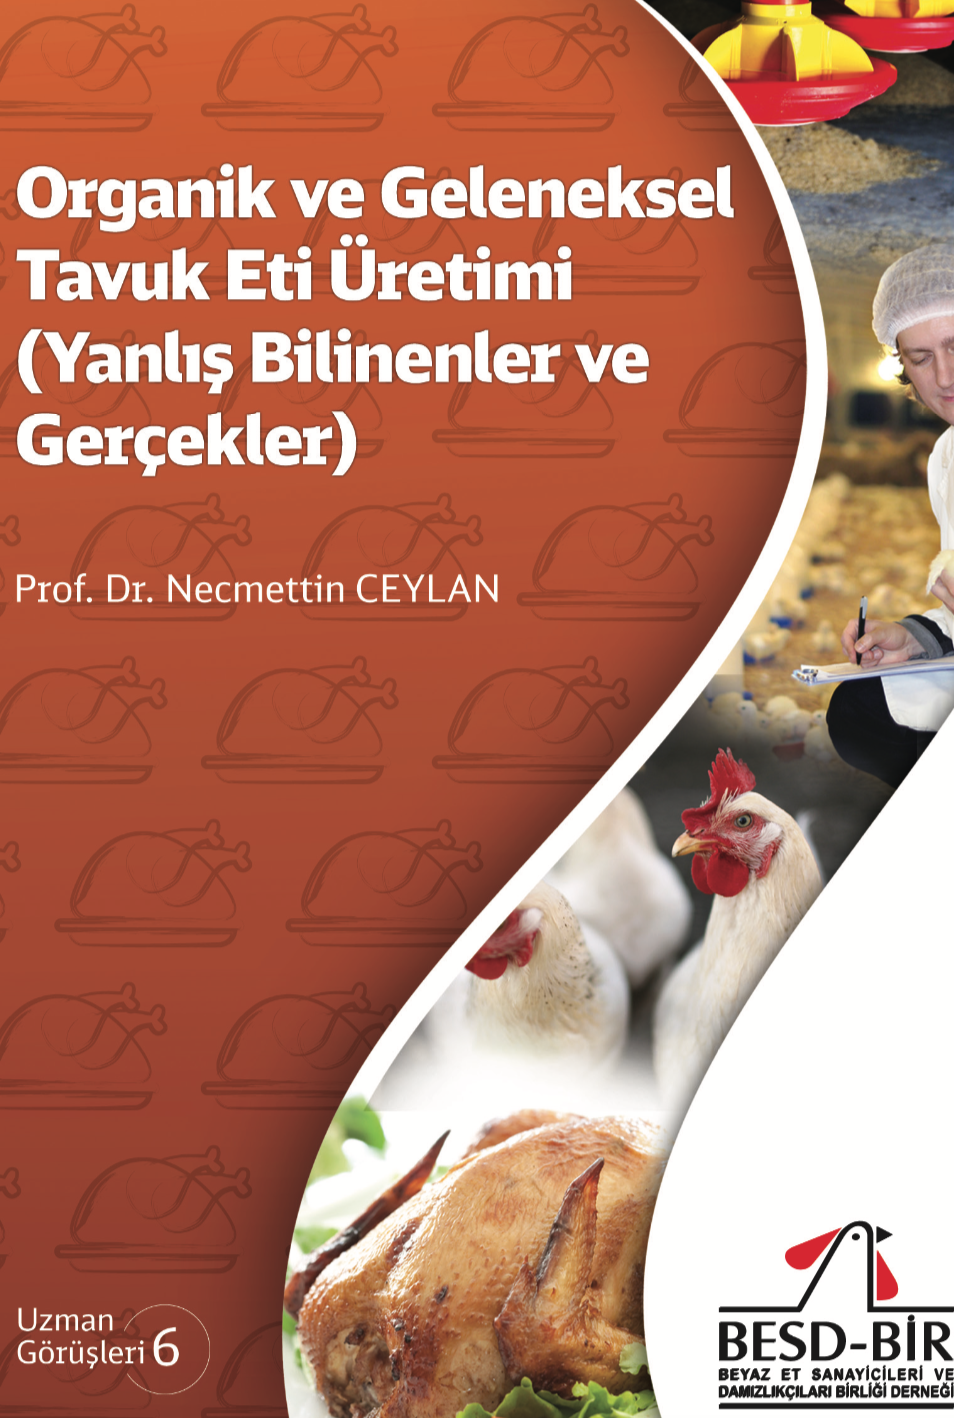 Organik ve Geleneksel Tavuk Eti Üretimi (Yanlış Bilinenler ve Gerçekler)